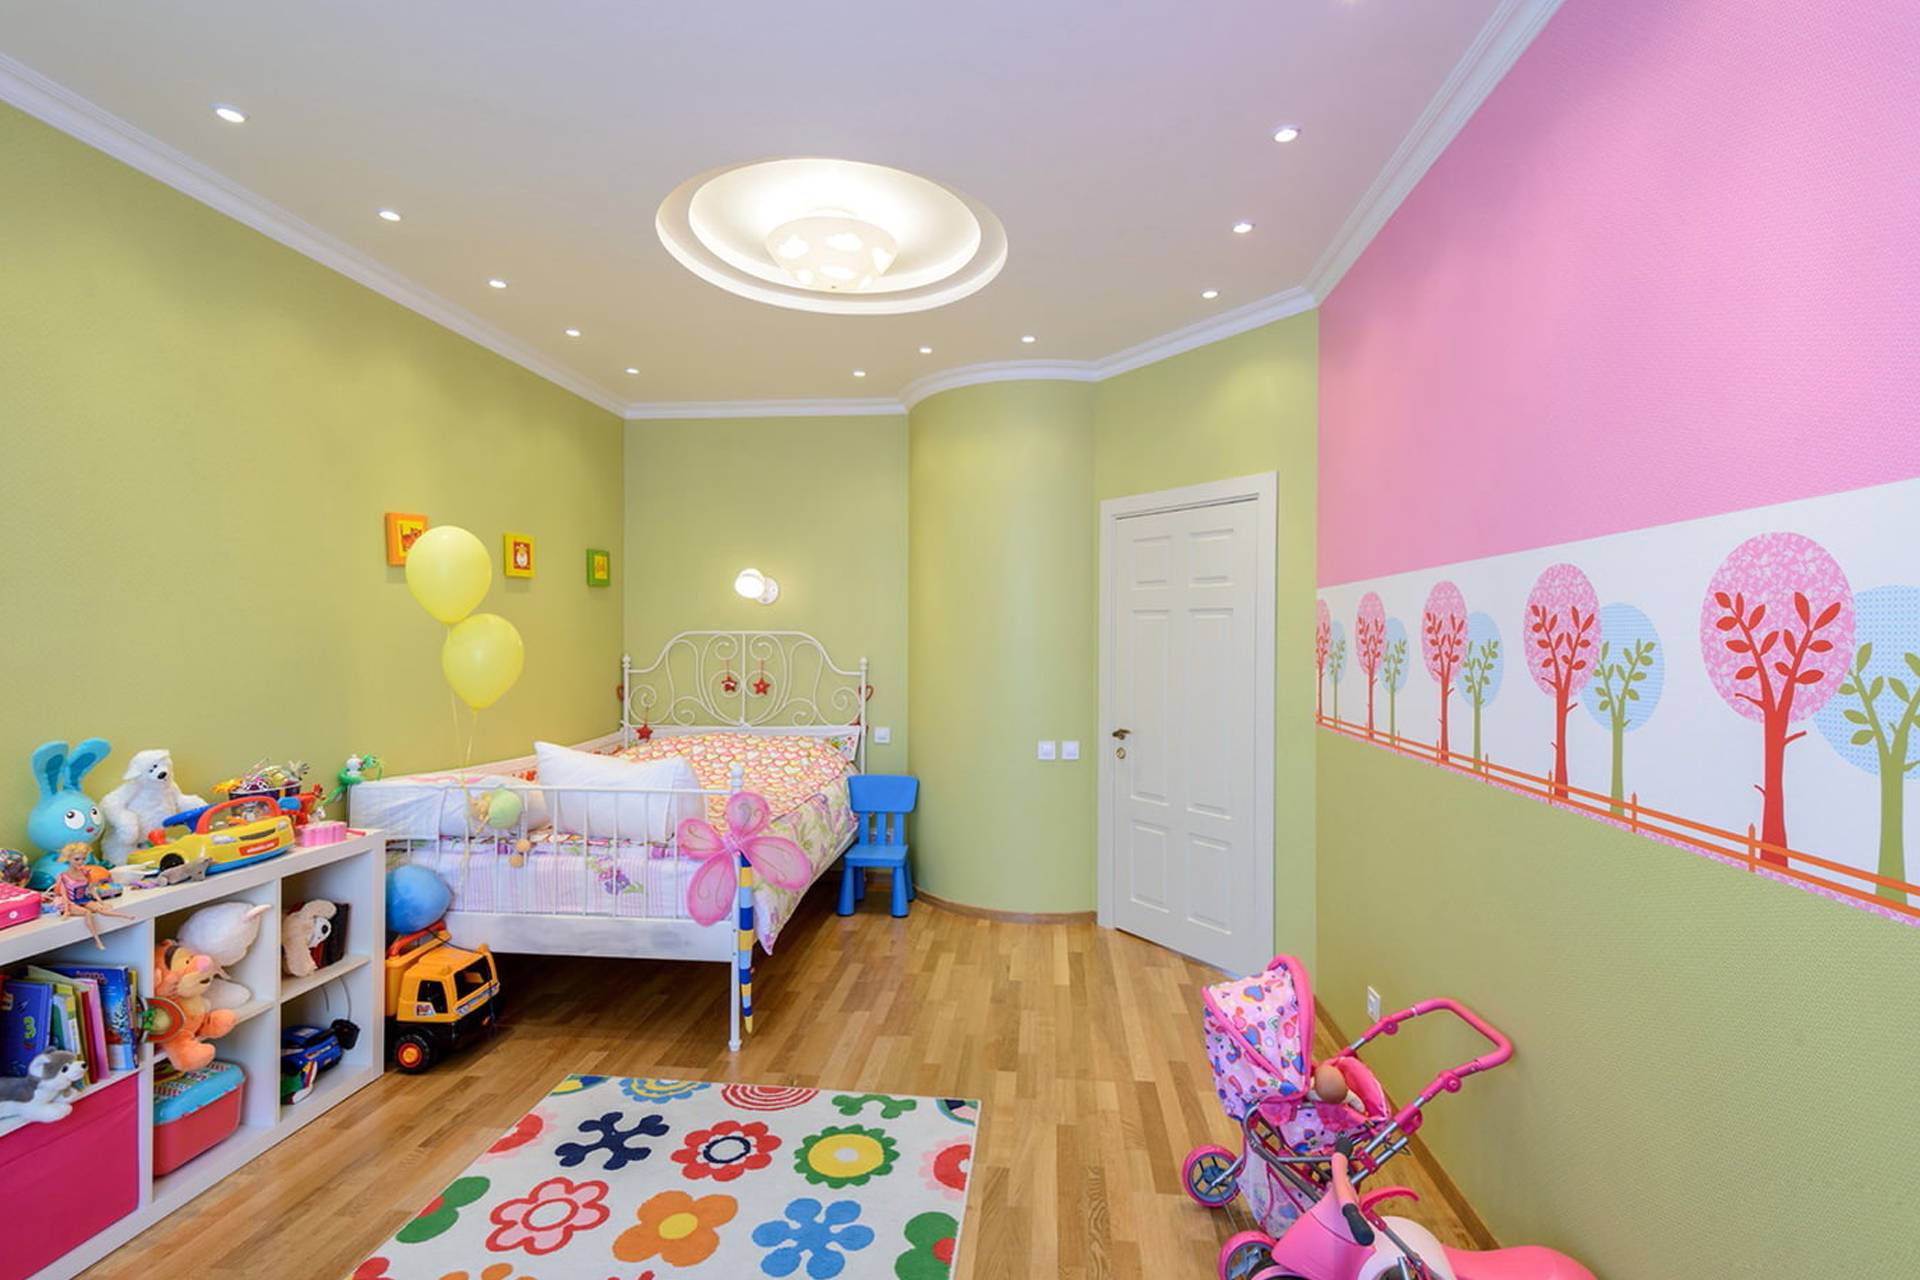 Освещение в детской комнате: виды, требования безопасности